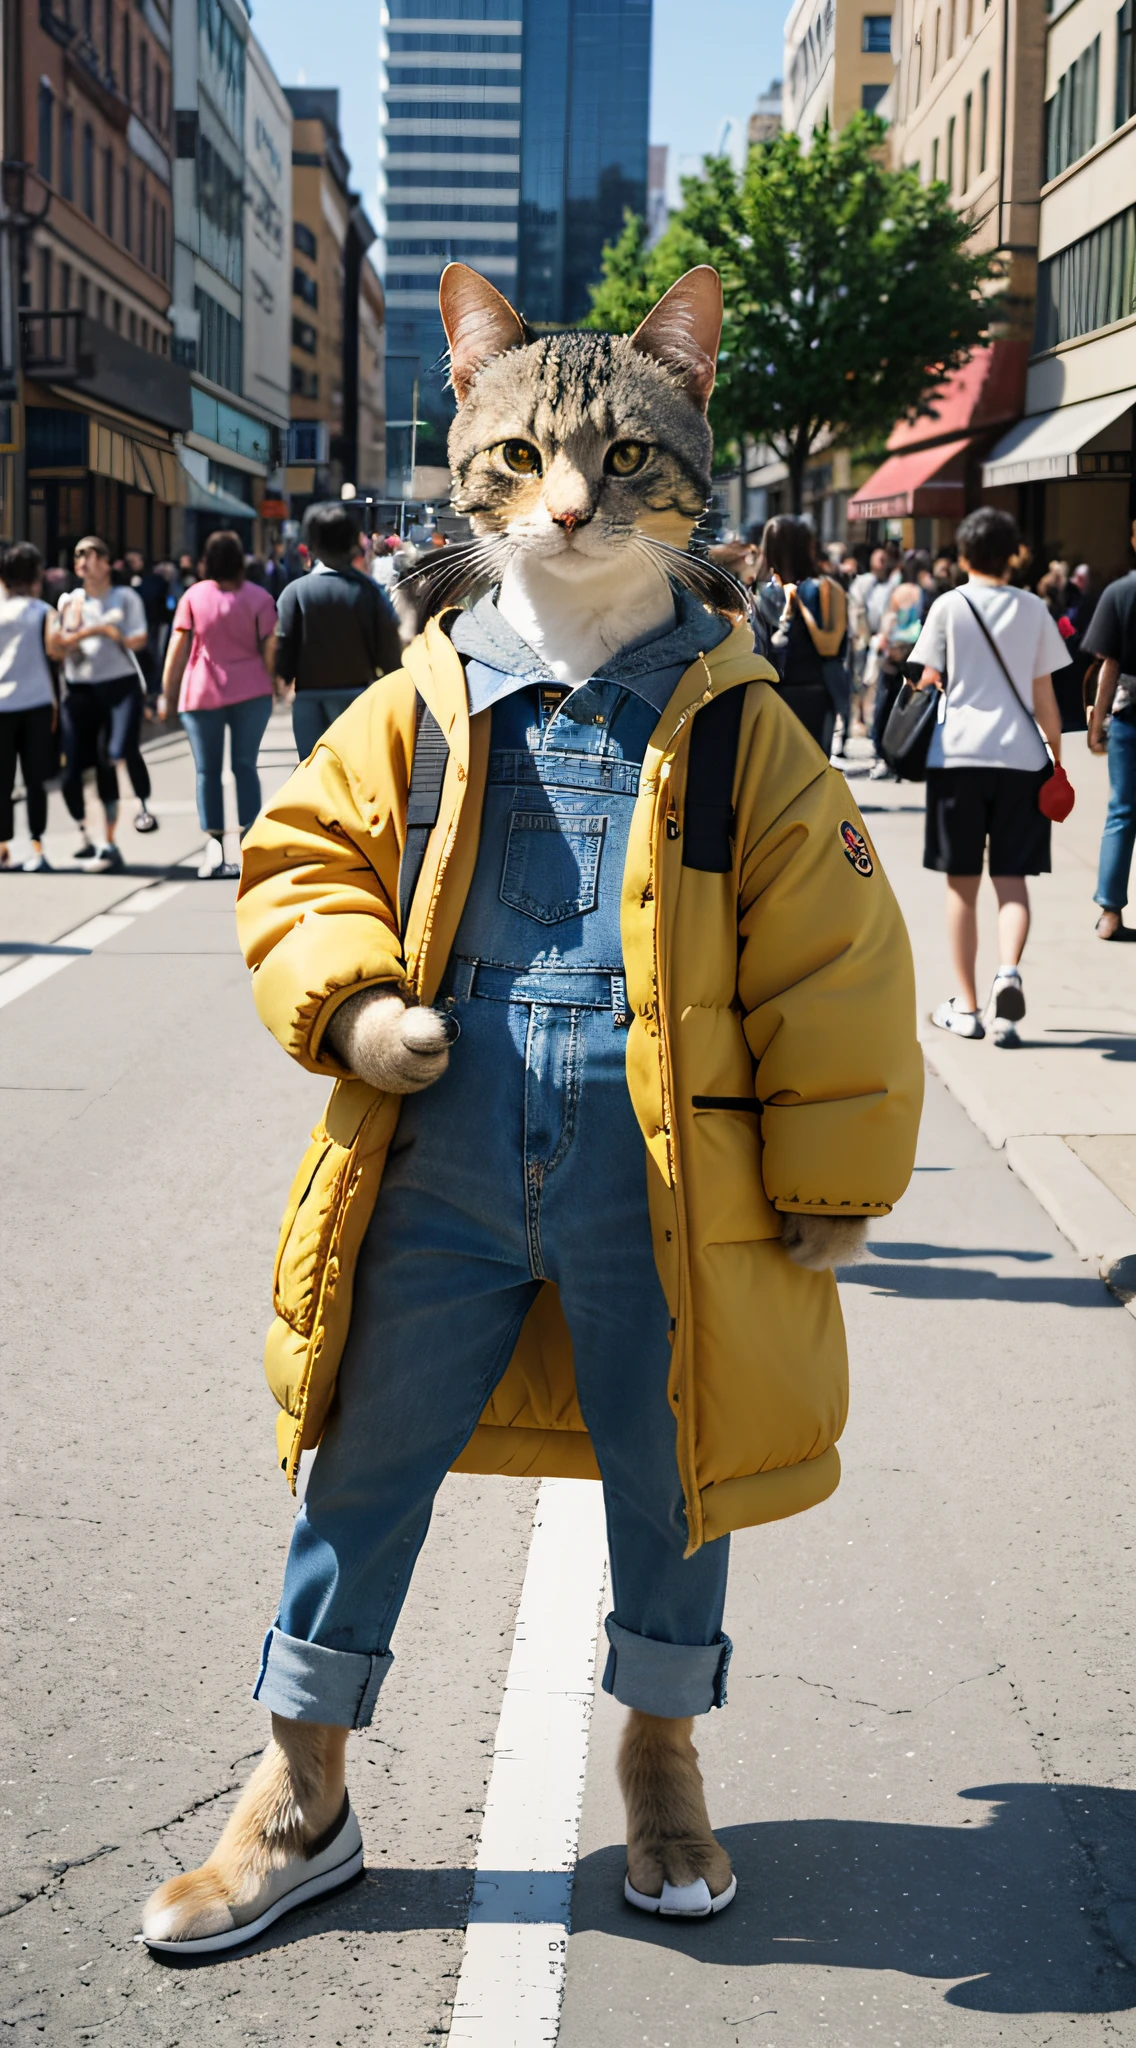 Photorealsitic, Eine zweibeinige Katze von der Größe eines Menschen, Betrachten Sie die Zuschauer, Auf der Straße, vor der Menge